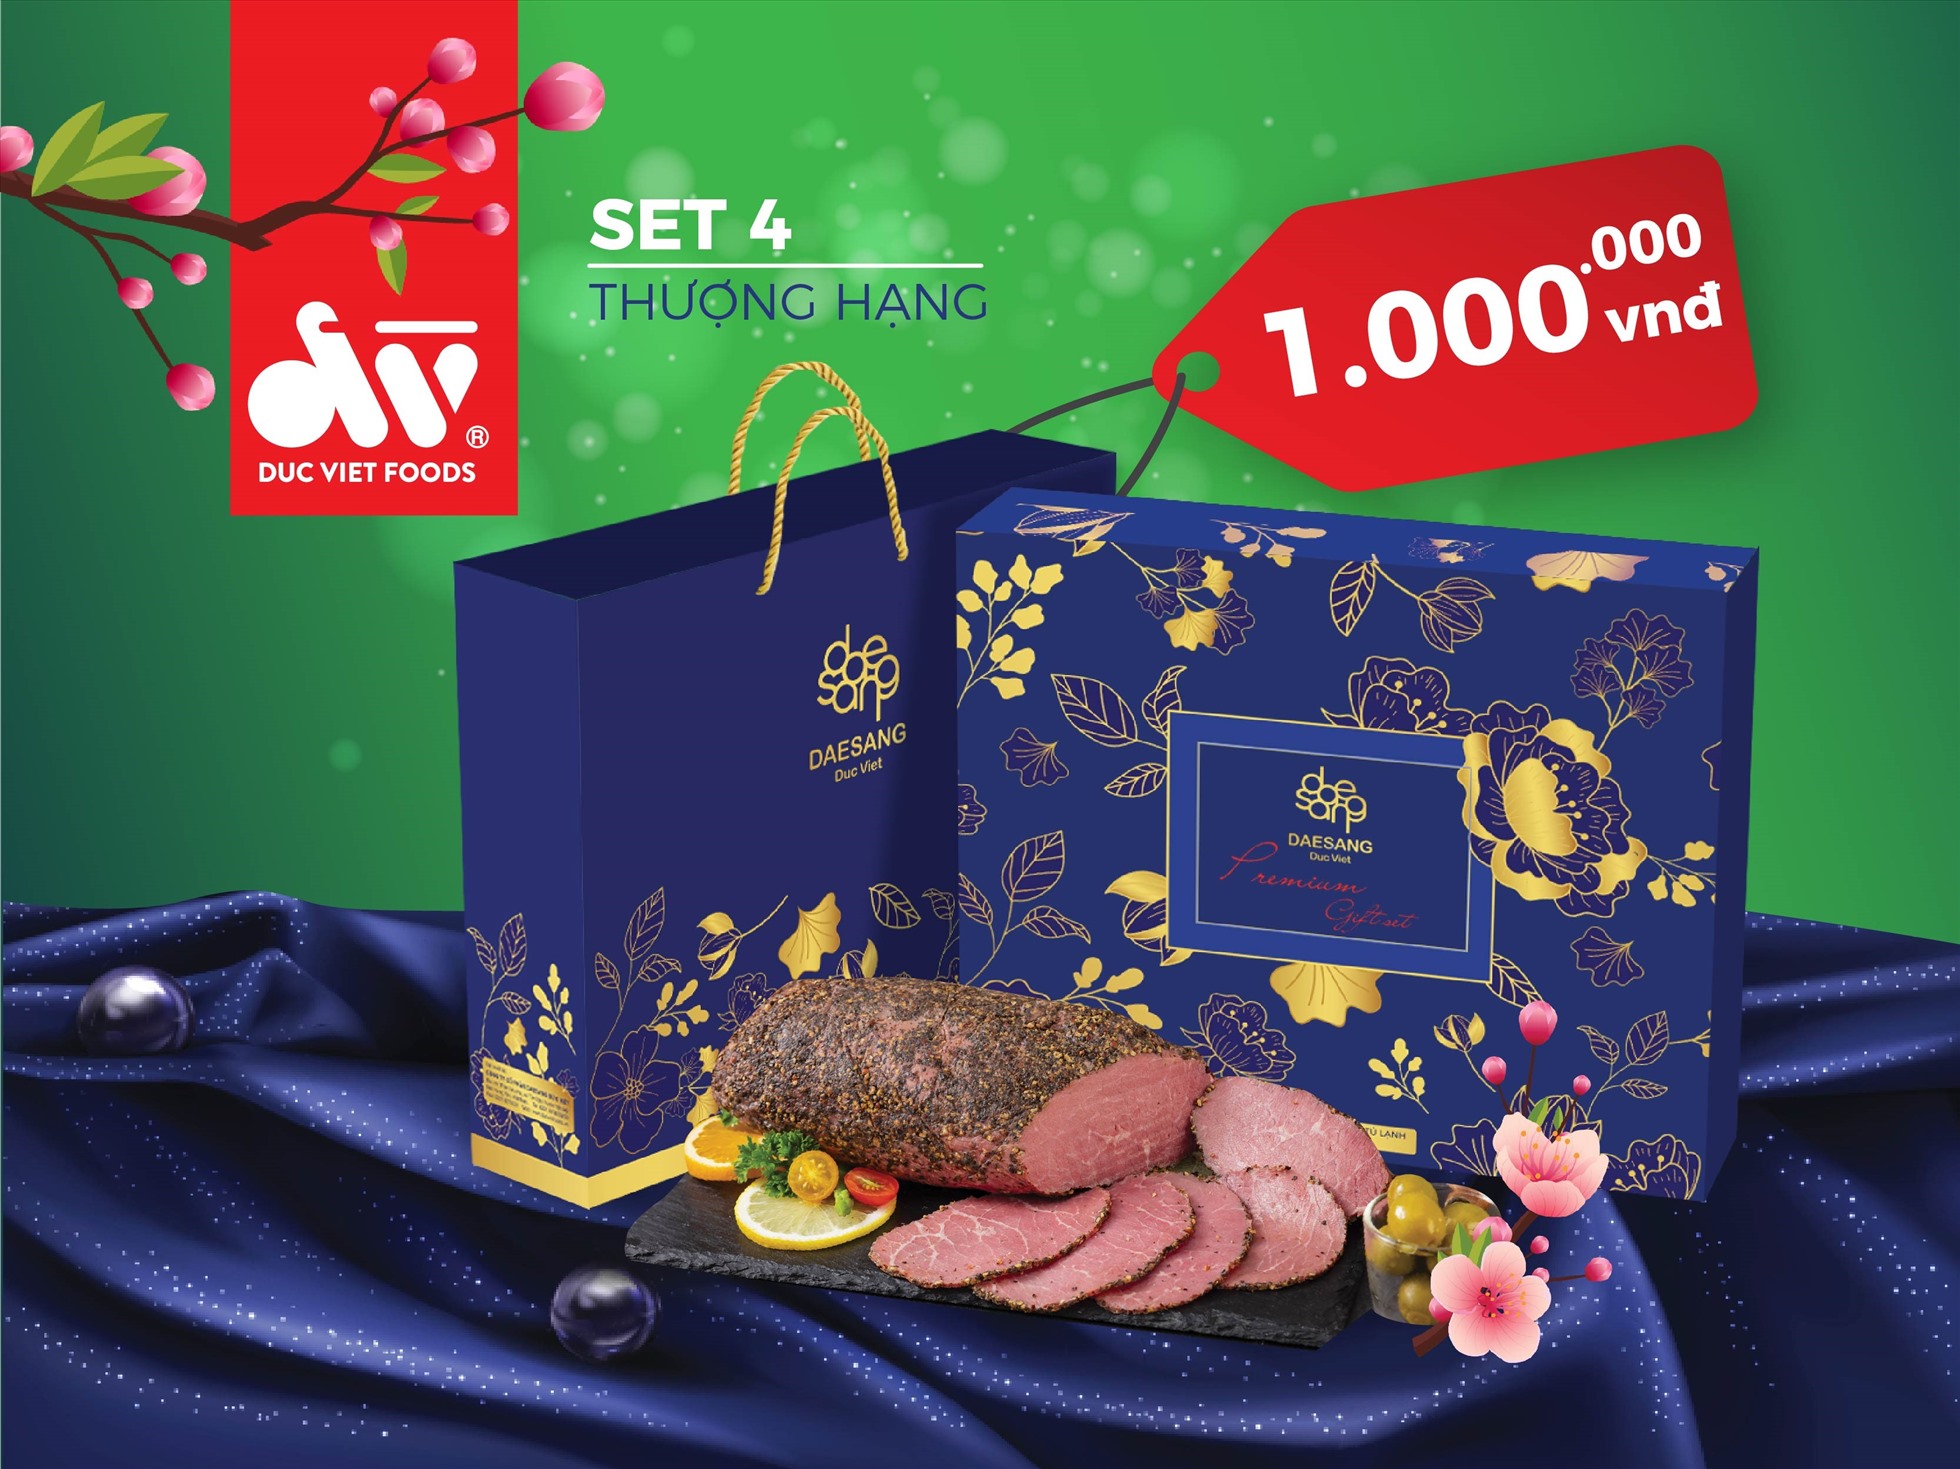 Set thượng hạng là set quà Tết cao cấp nhất trong năm nay của Công ty CP Daesang Đức Việt.